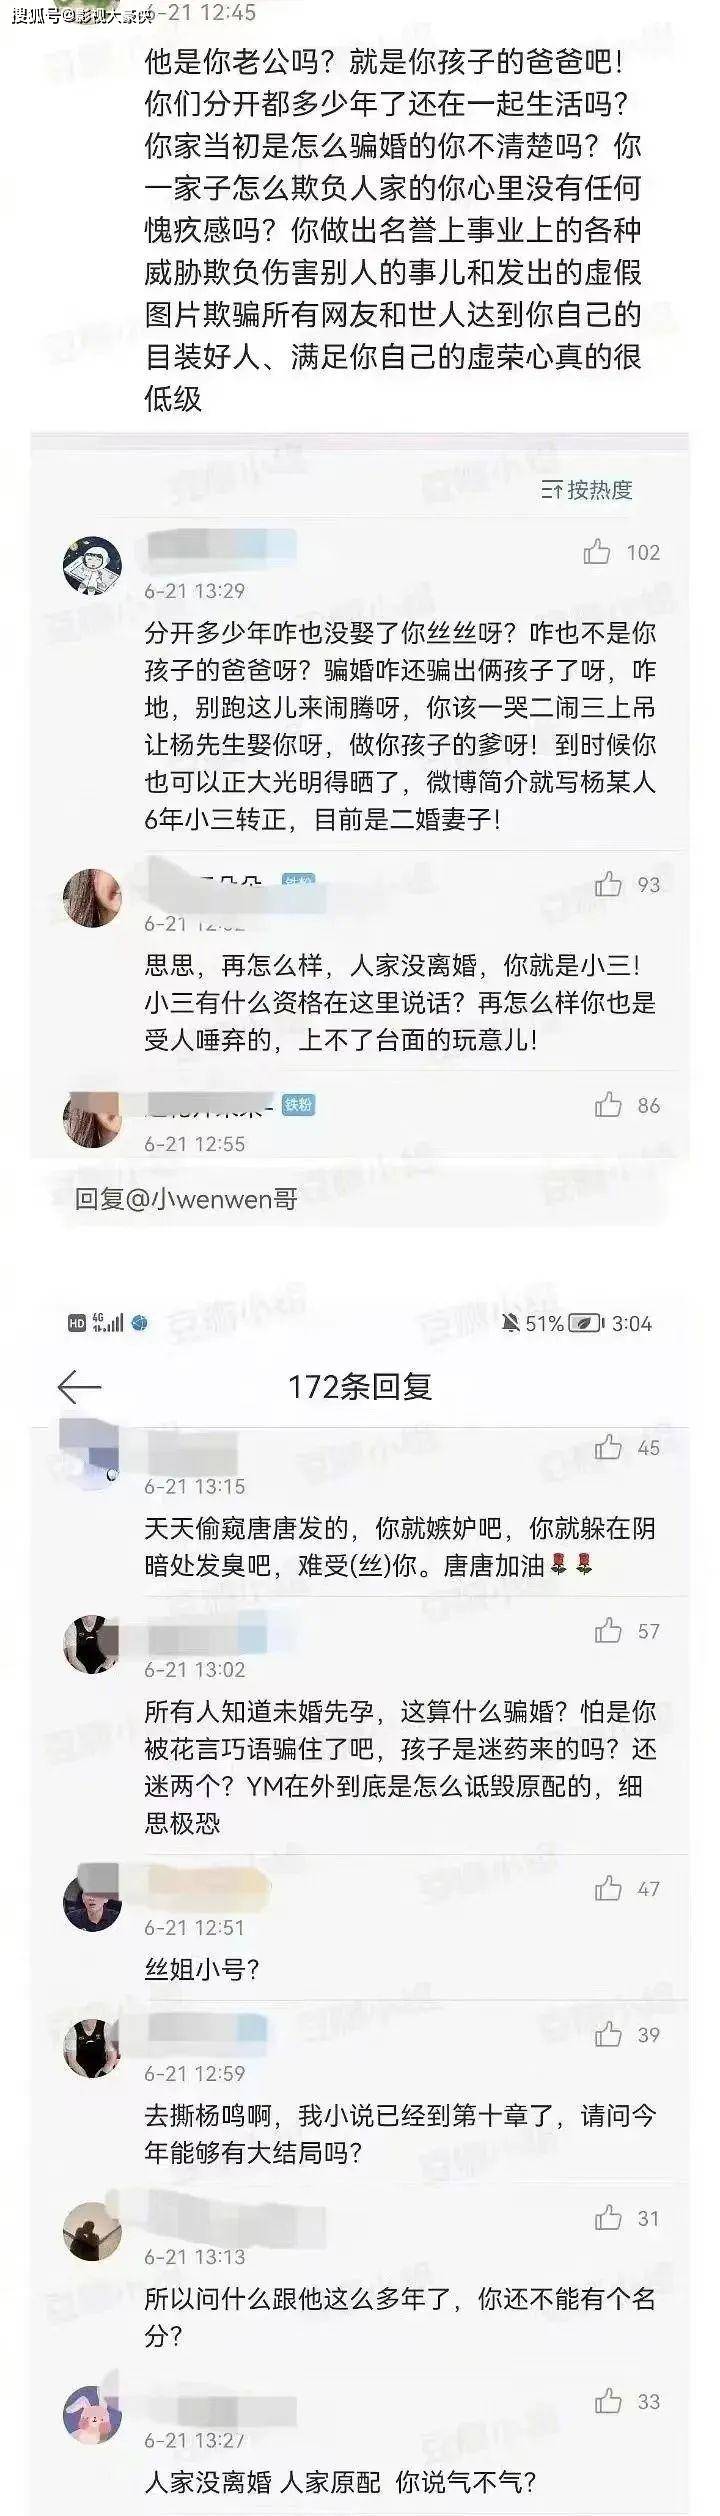 篮球教练杨鸣的离婚宣言在社交媒体上掀起轩然大波 婚外出轨的绯闻成为众人关注的焦点(图5)